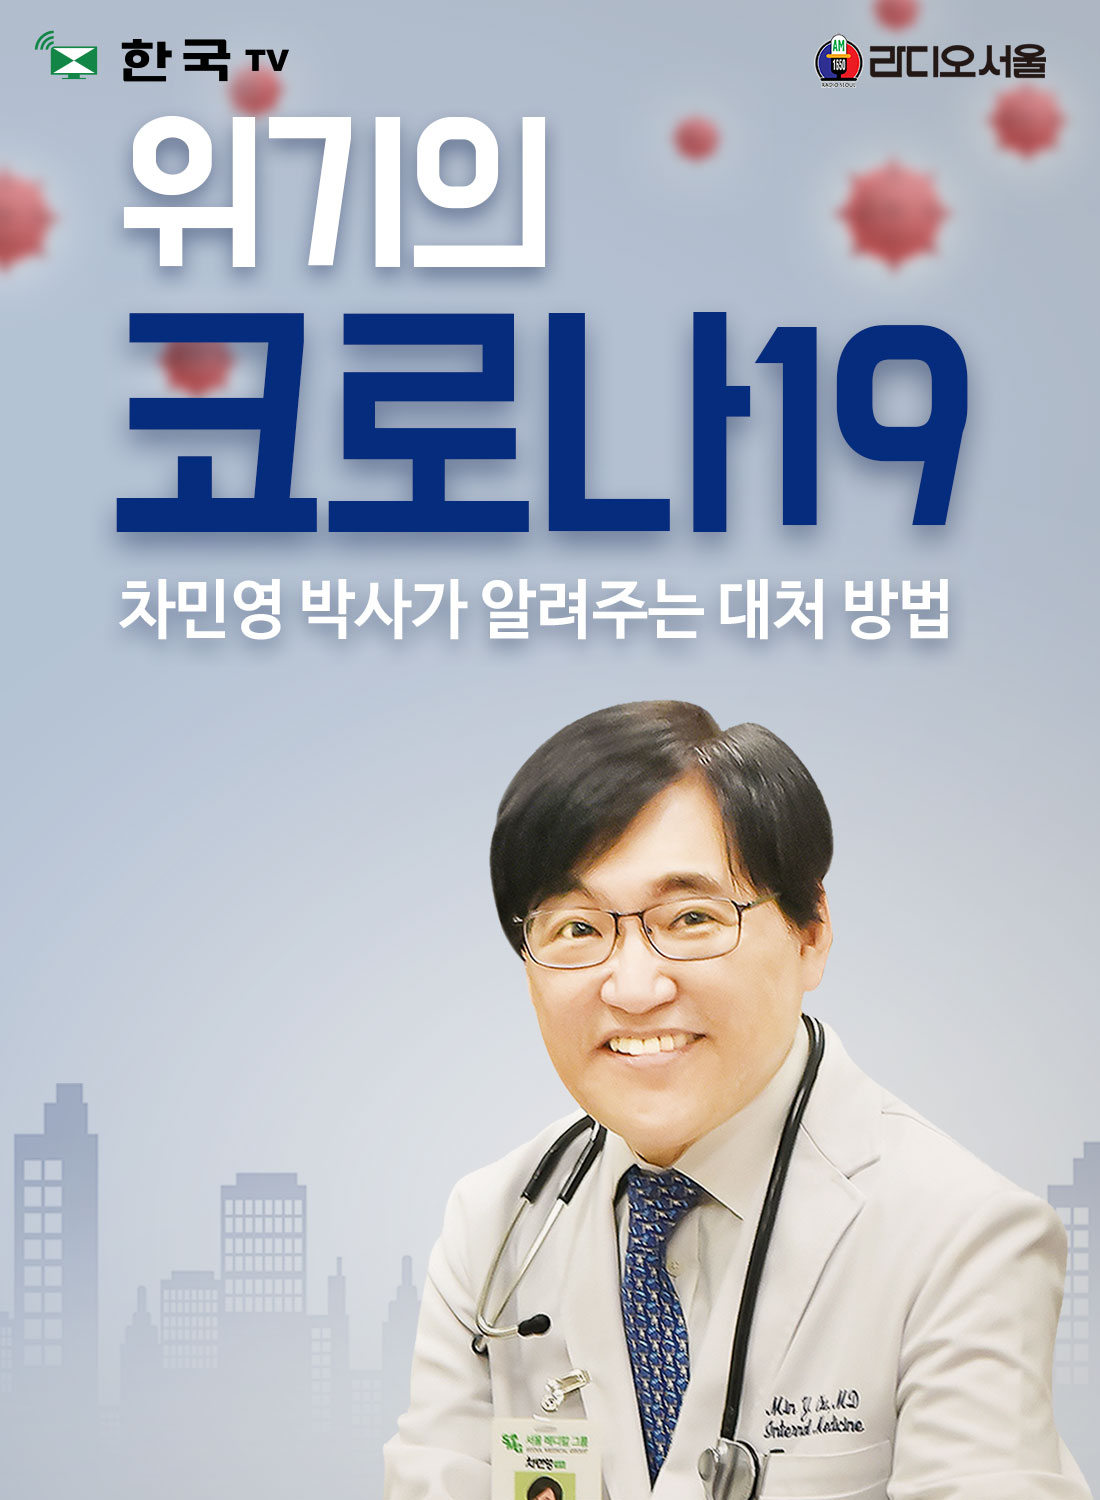 차민영 박사의 코로나19 바이러스 예방과 대책 특집방송